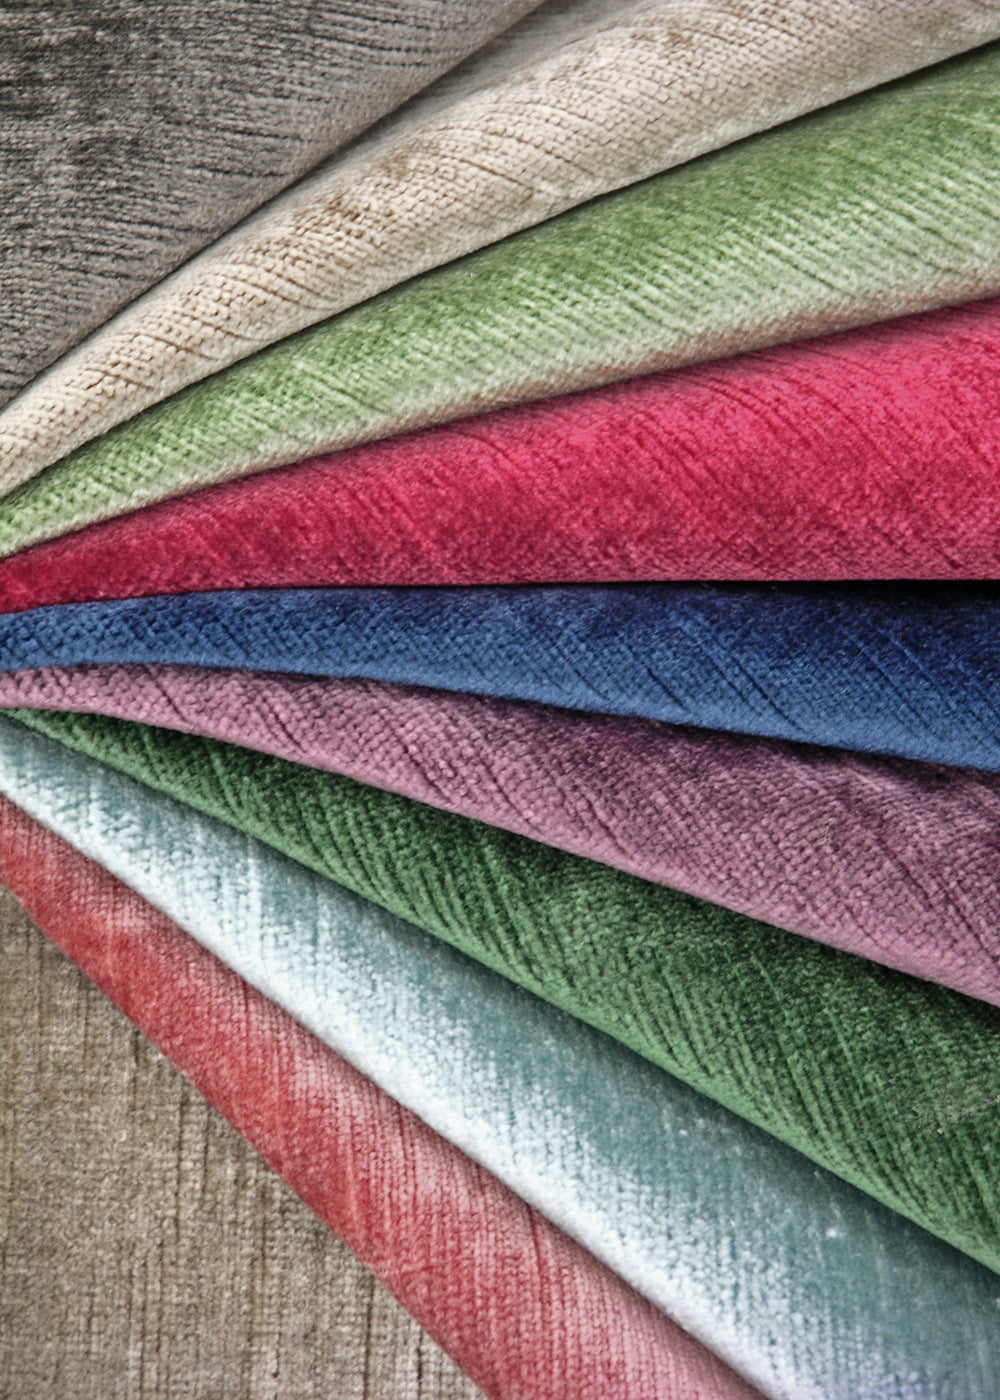 a colorful array of velvet fabrics arranged in a fan shape